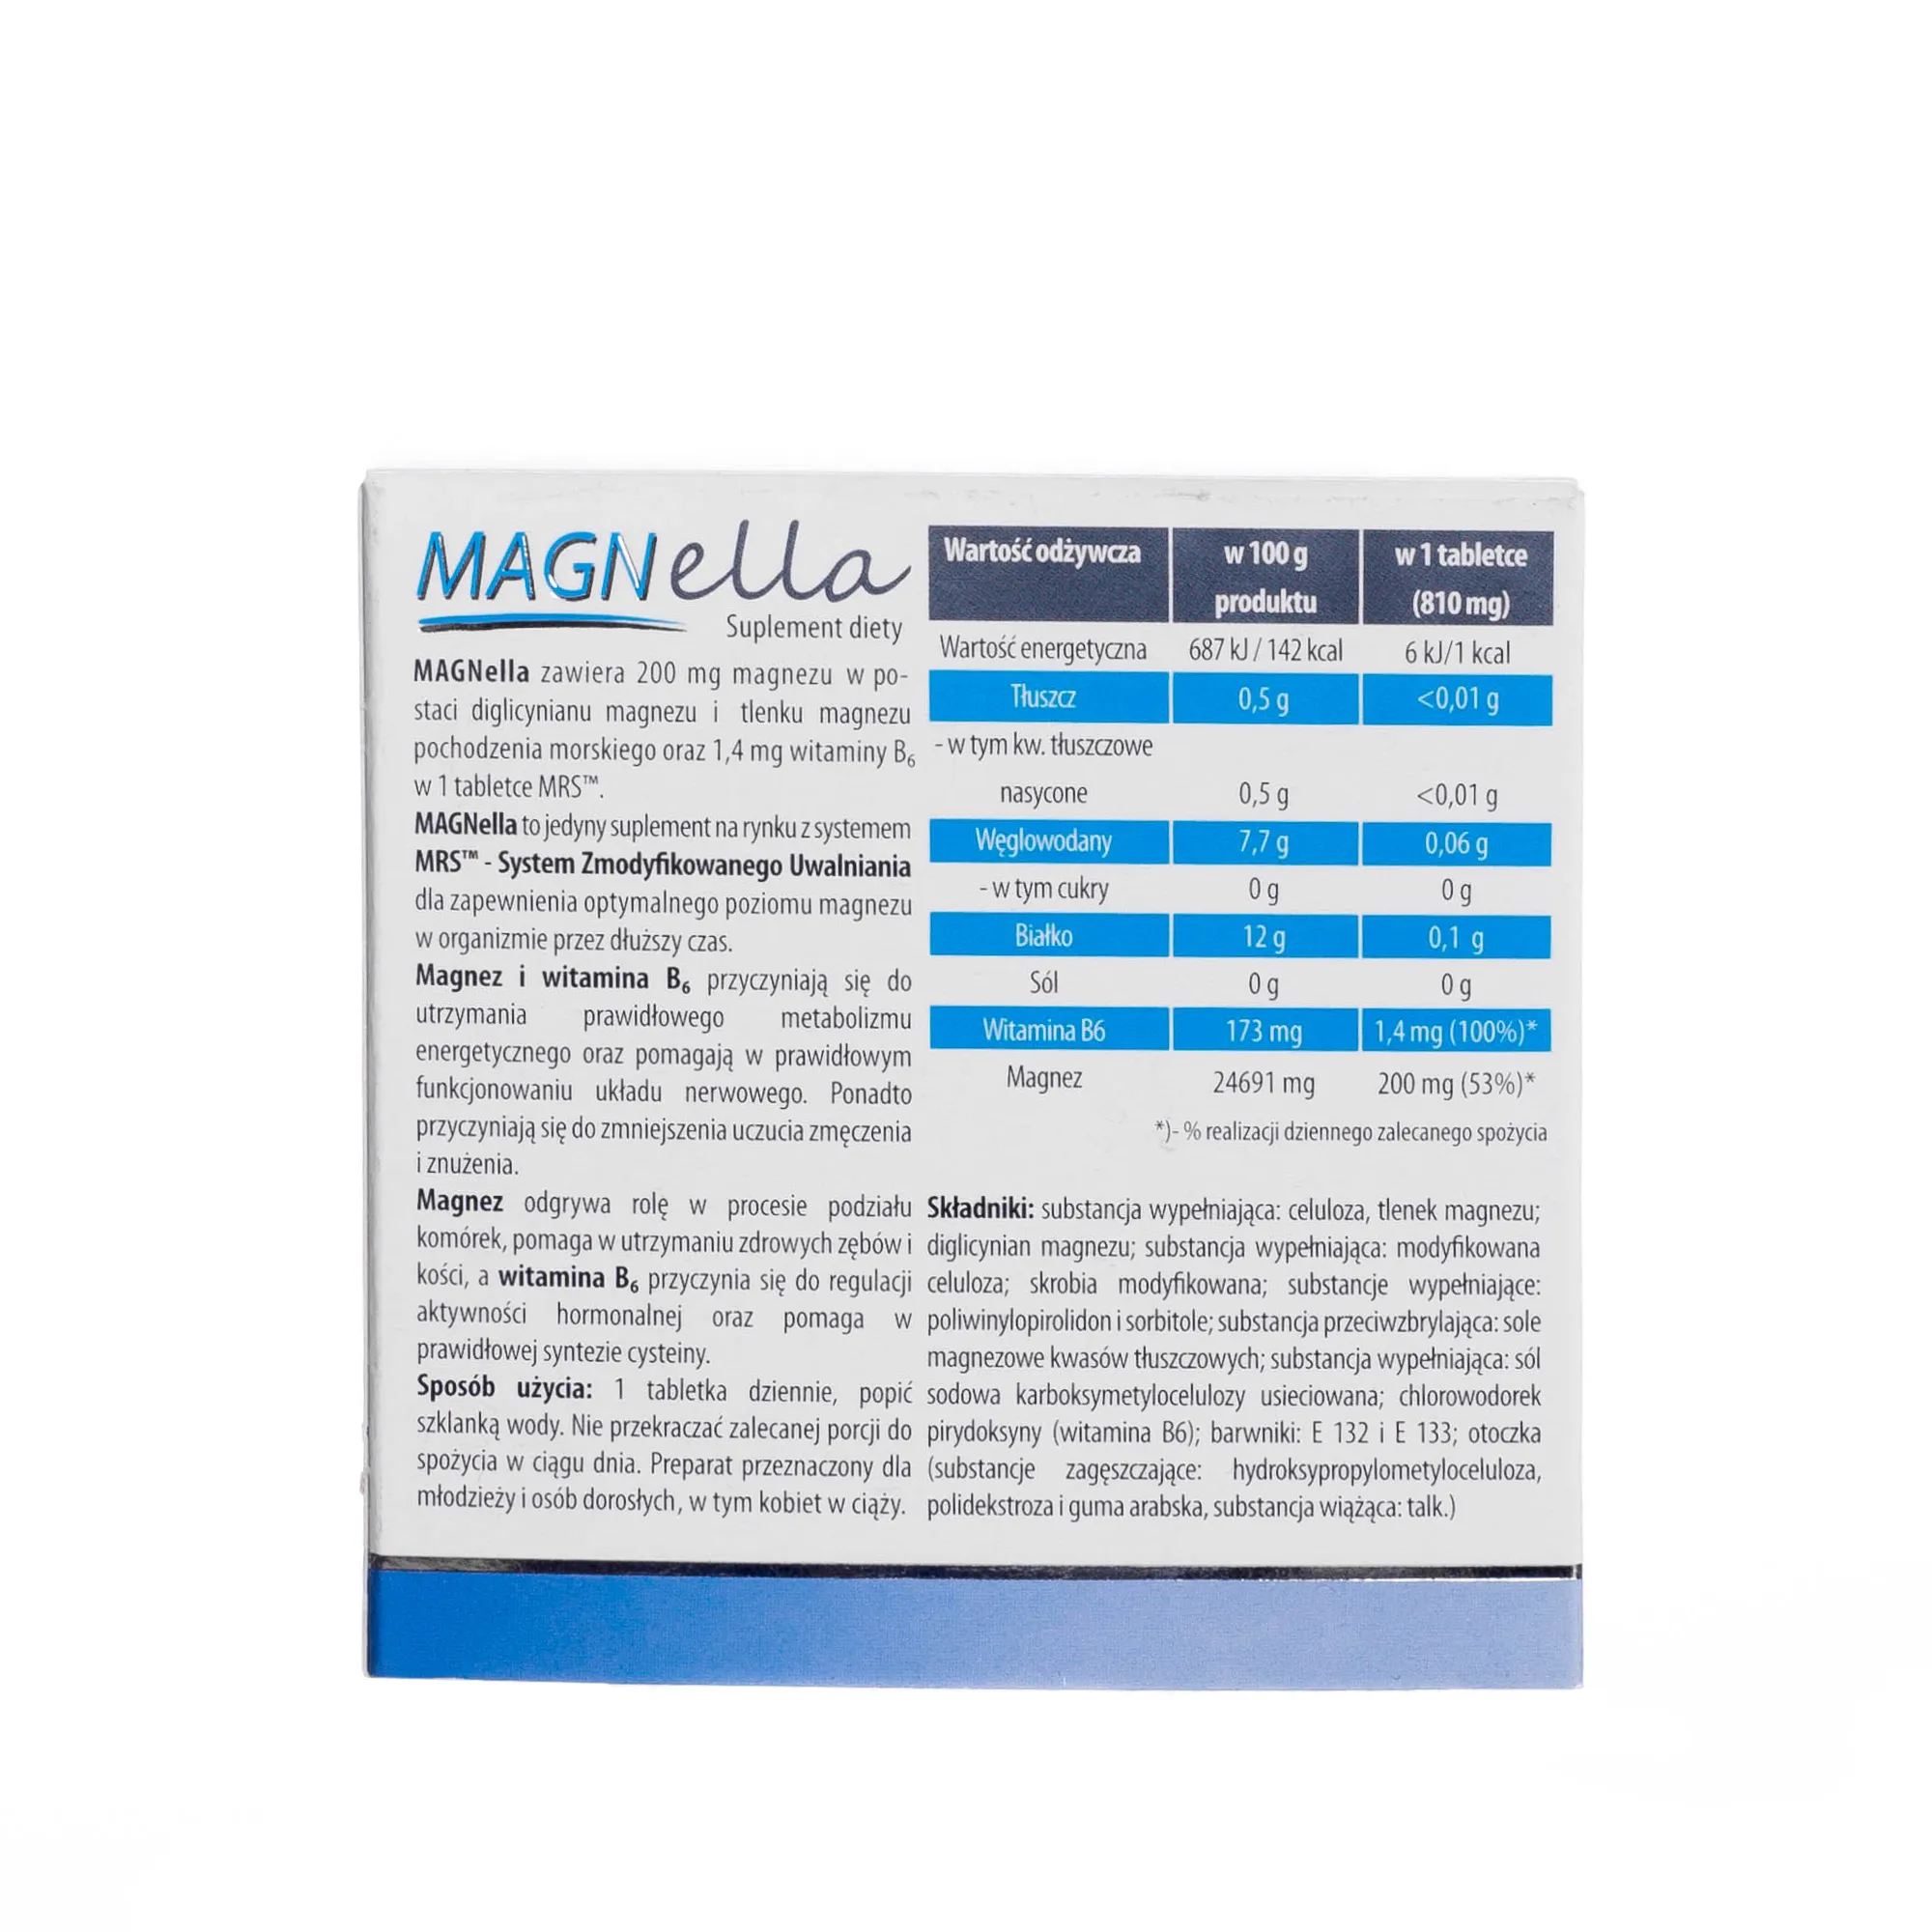 Magnella - suplement diety zawierający chelat magnezu, 42 tabletki 